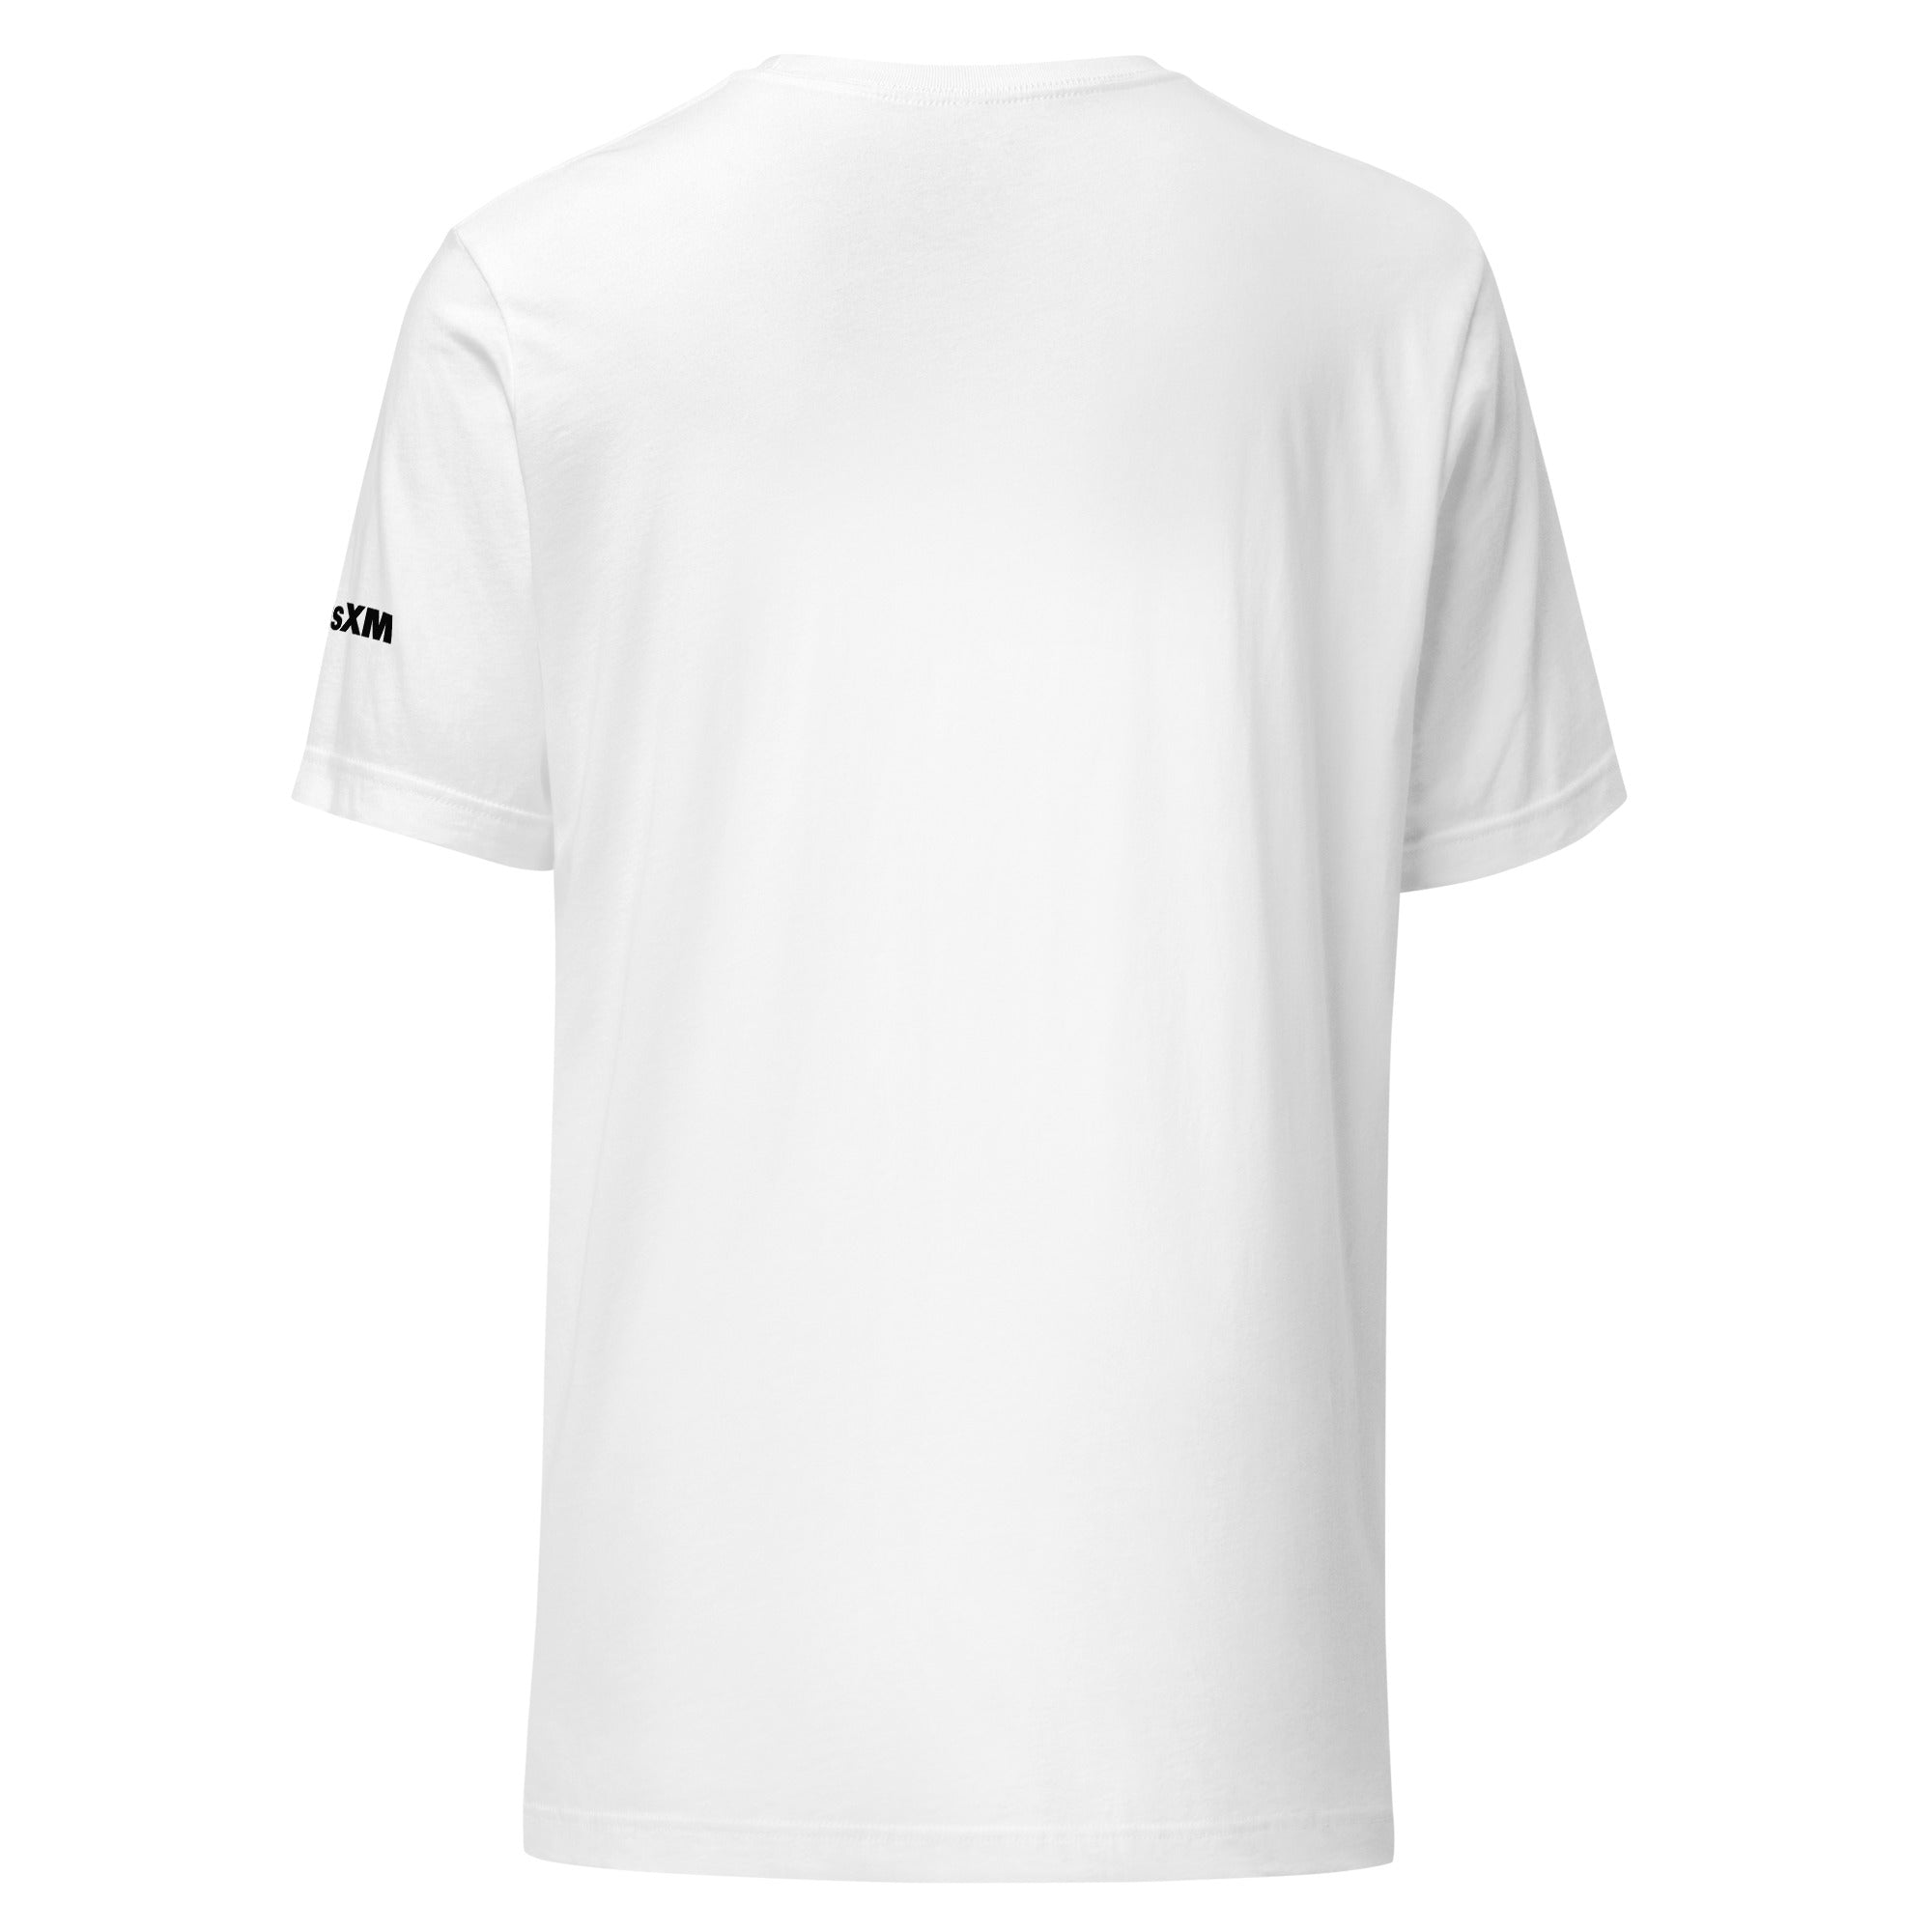 SXM Chill: T-shirt (White)